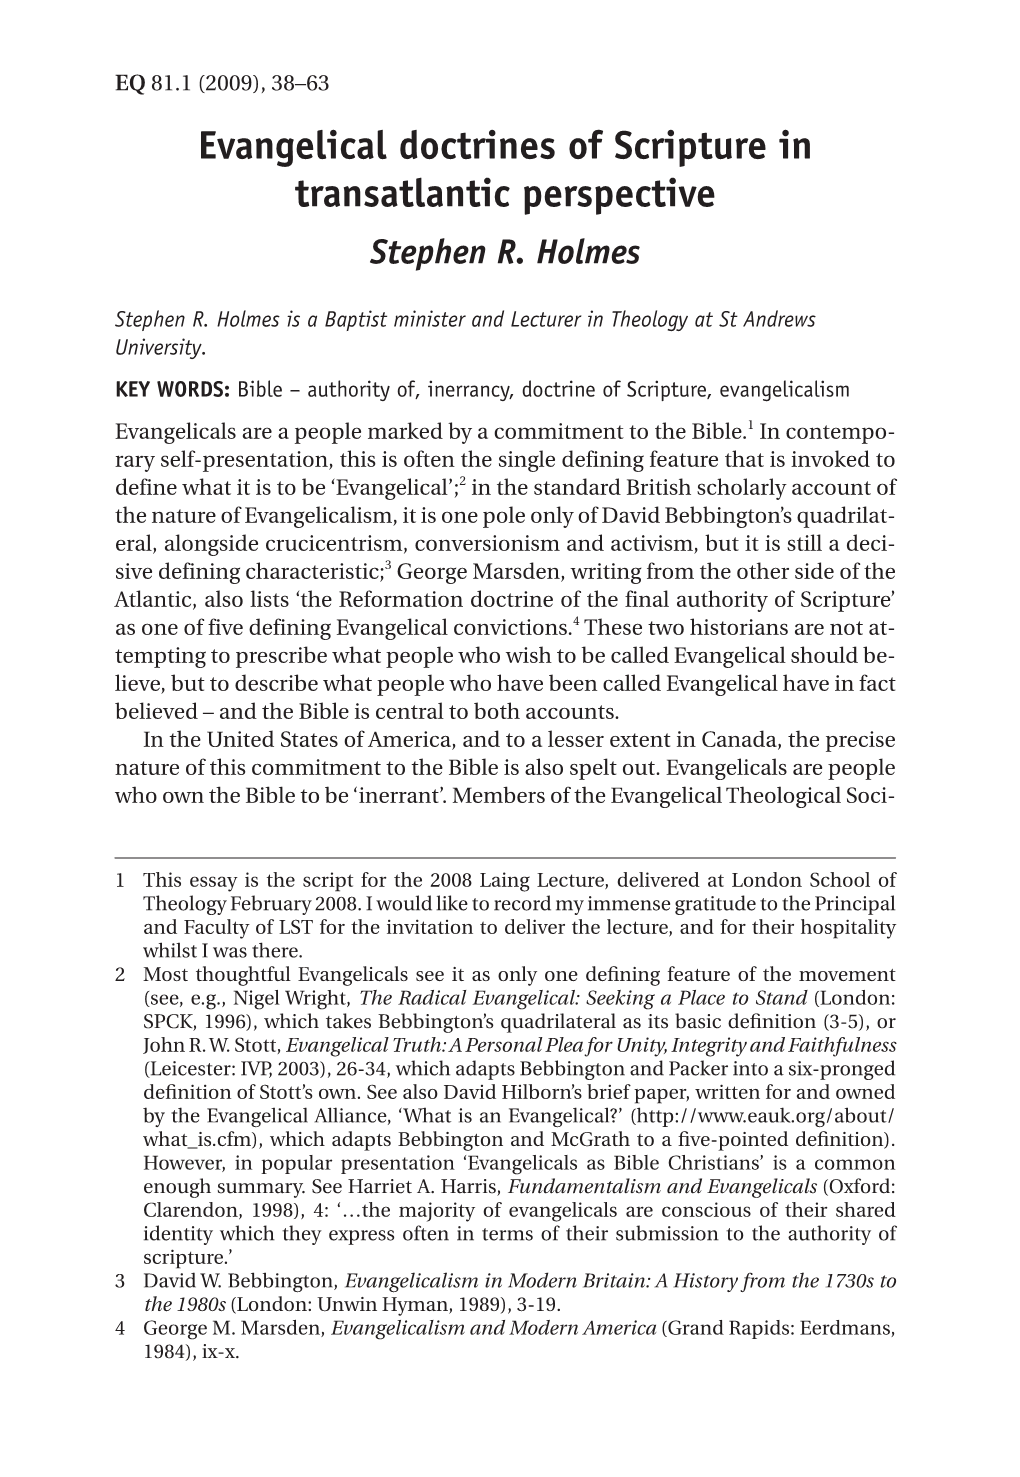 Evangelical Doctrines of Scripture in Transatlantic Perspective Transatlantic Perspective Stephen R